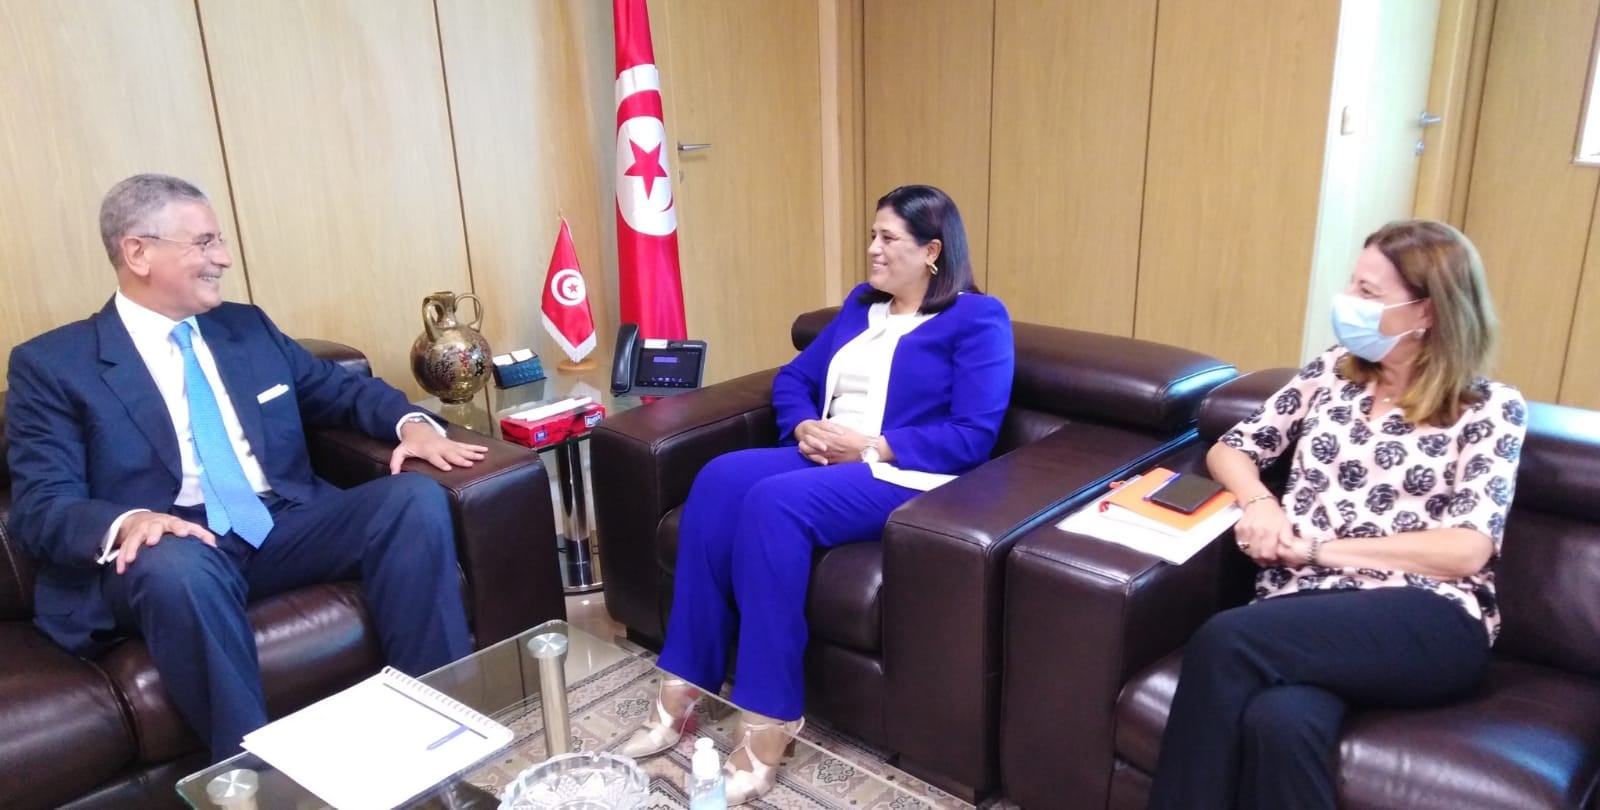 في لقاءه بالسيدة سهام نمصية، نائب رئيس البنك الدولي يجدد التزام مؤسسته بمواصلة دعم تونس